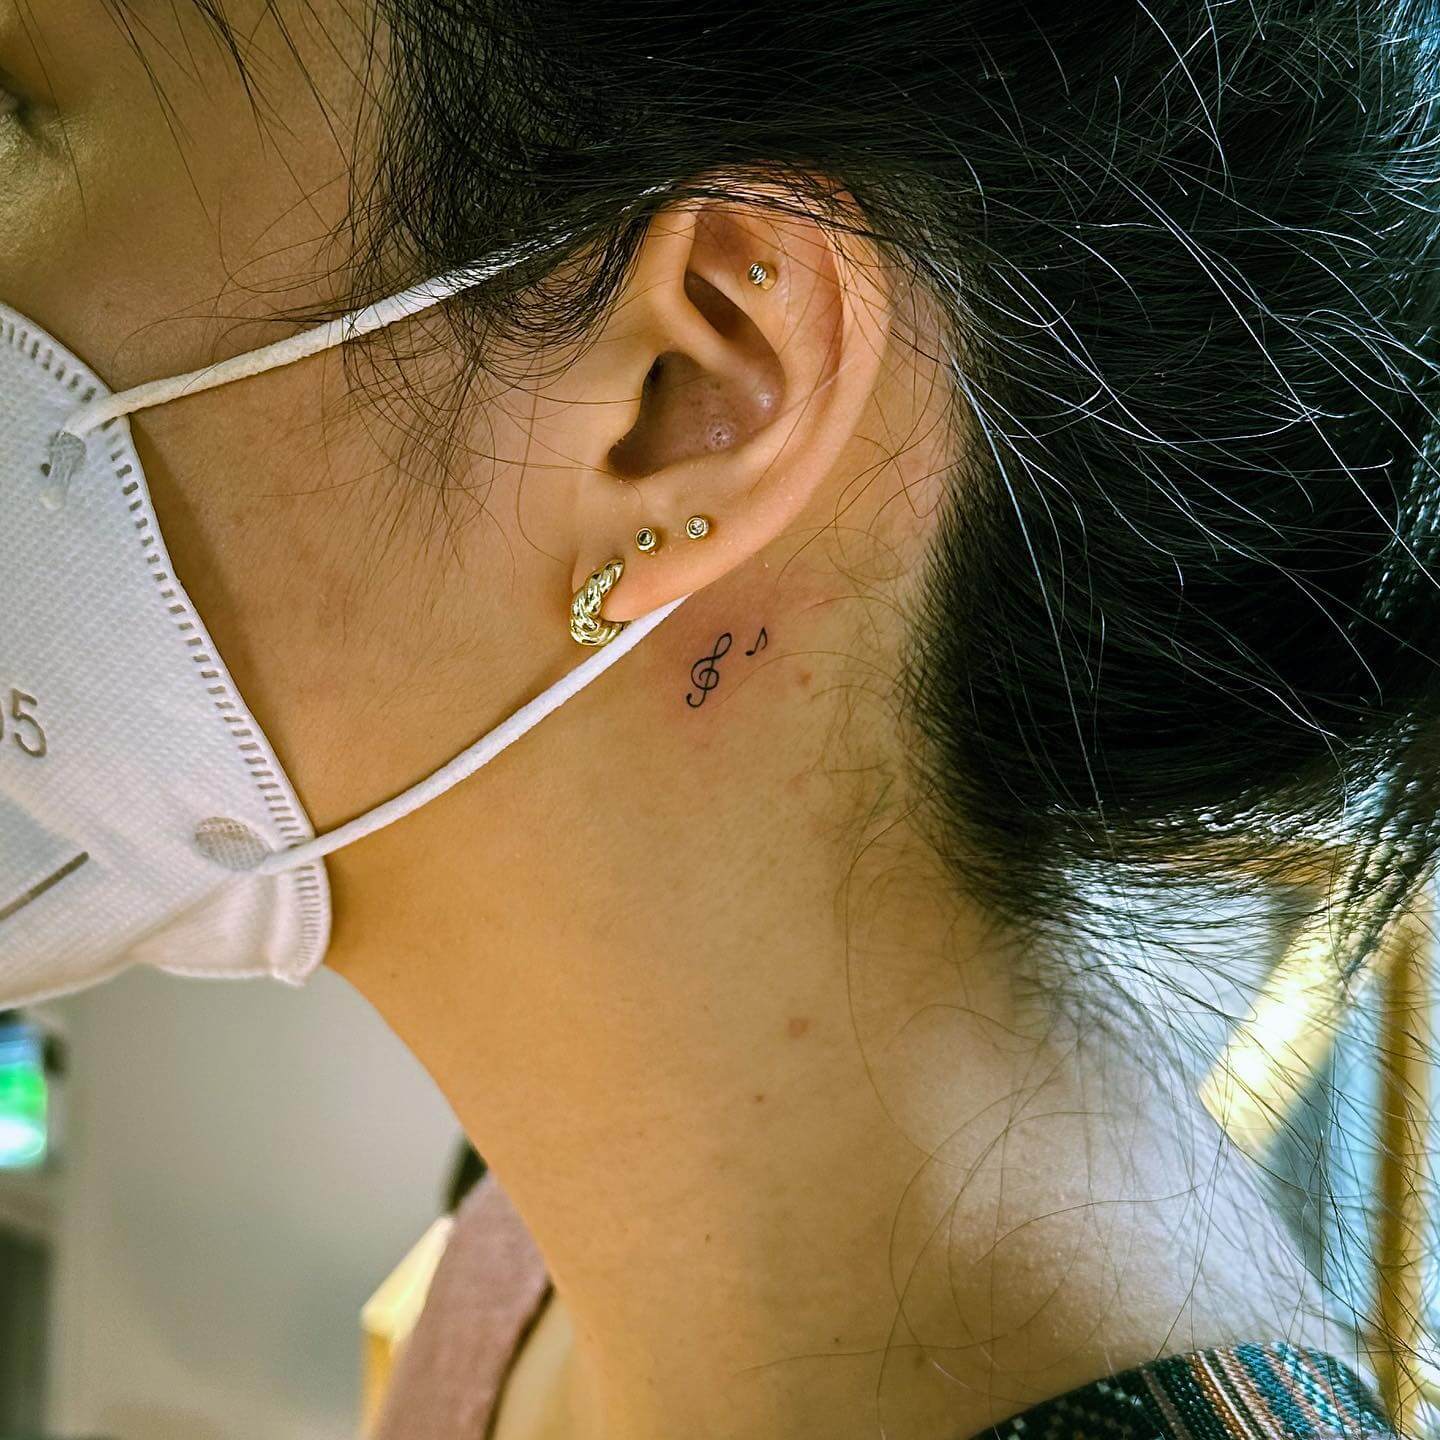 Tiny Tattoos Behind Ear